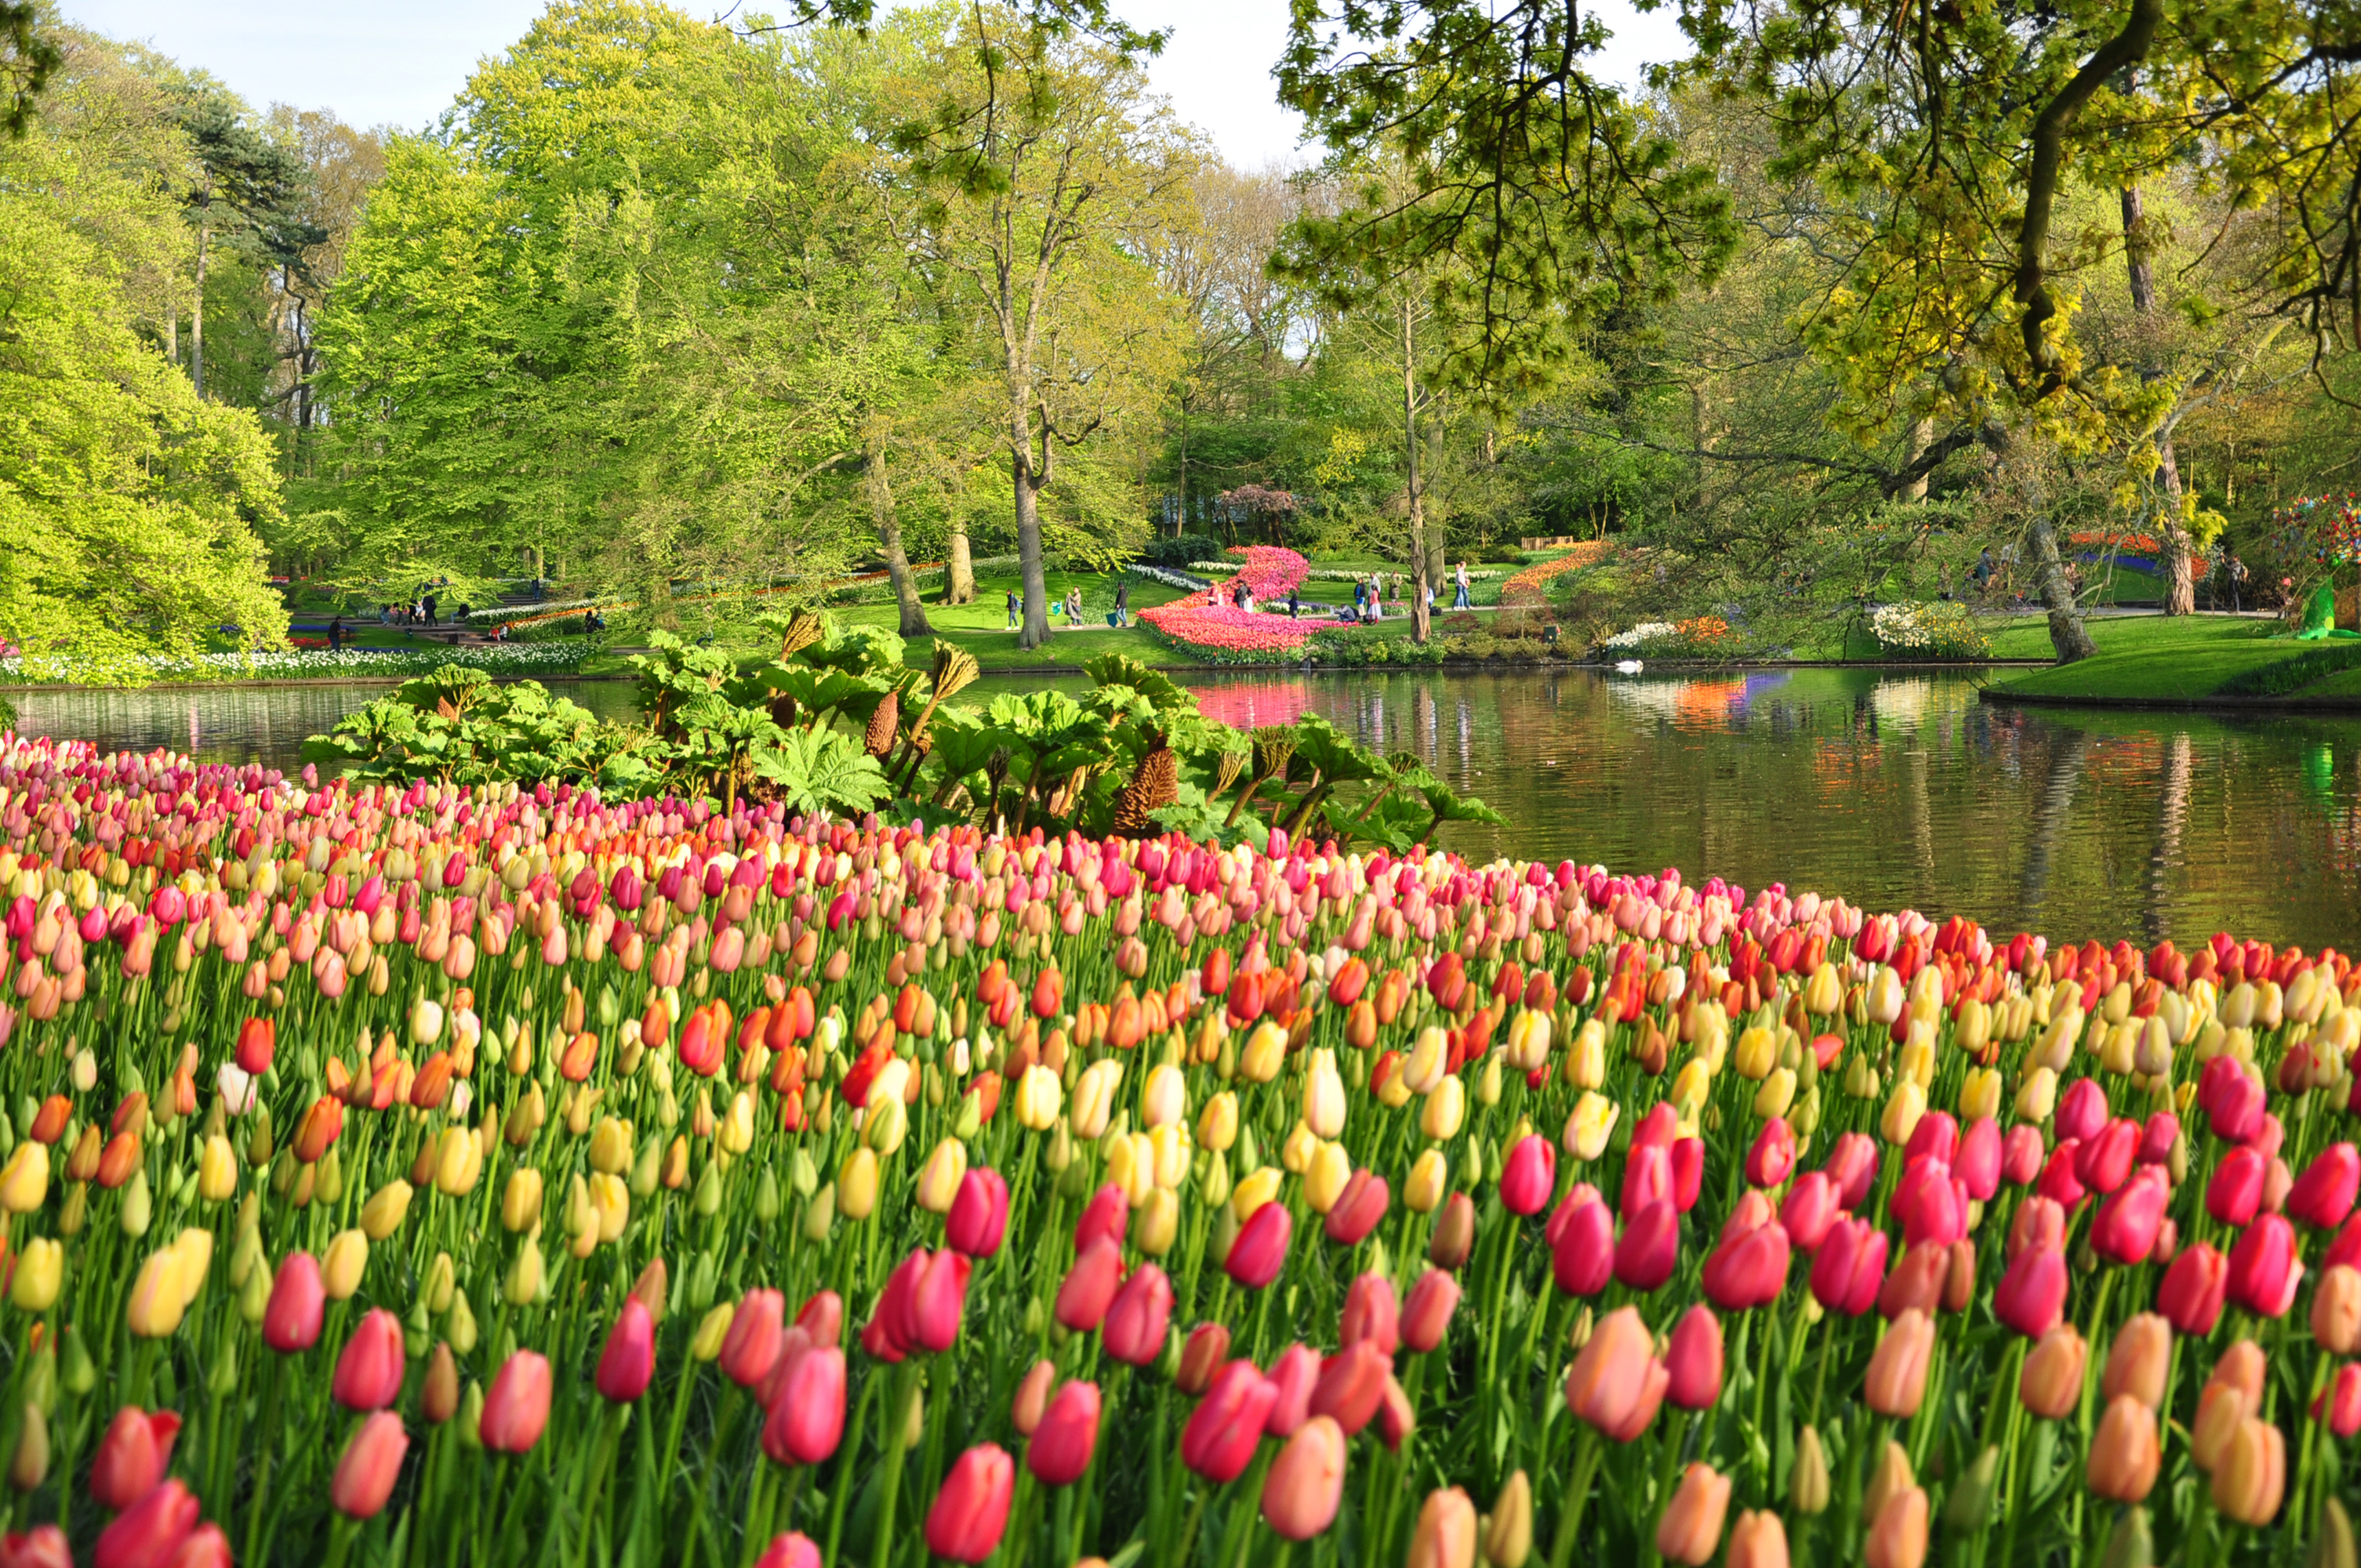 Descarga gratuita de fondo de pantalla para móvil de Flor, Parque, Árbol, Estanque, Primavera, Tulipán, Países Bajos, Fotografía.